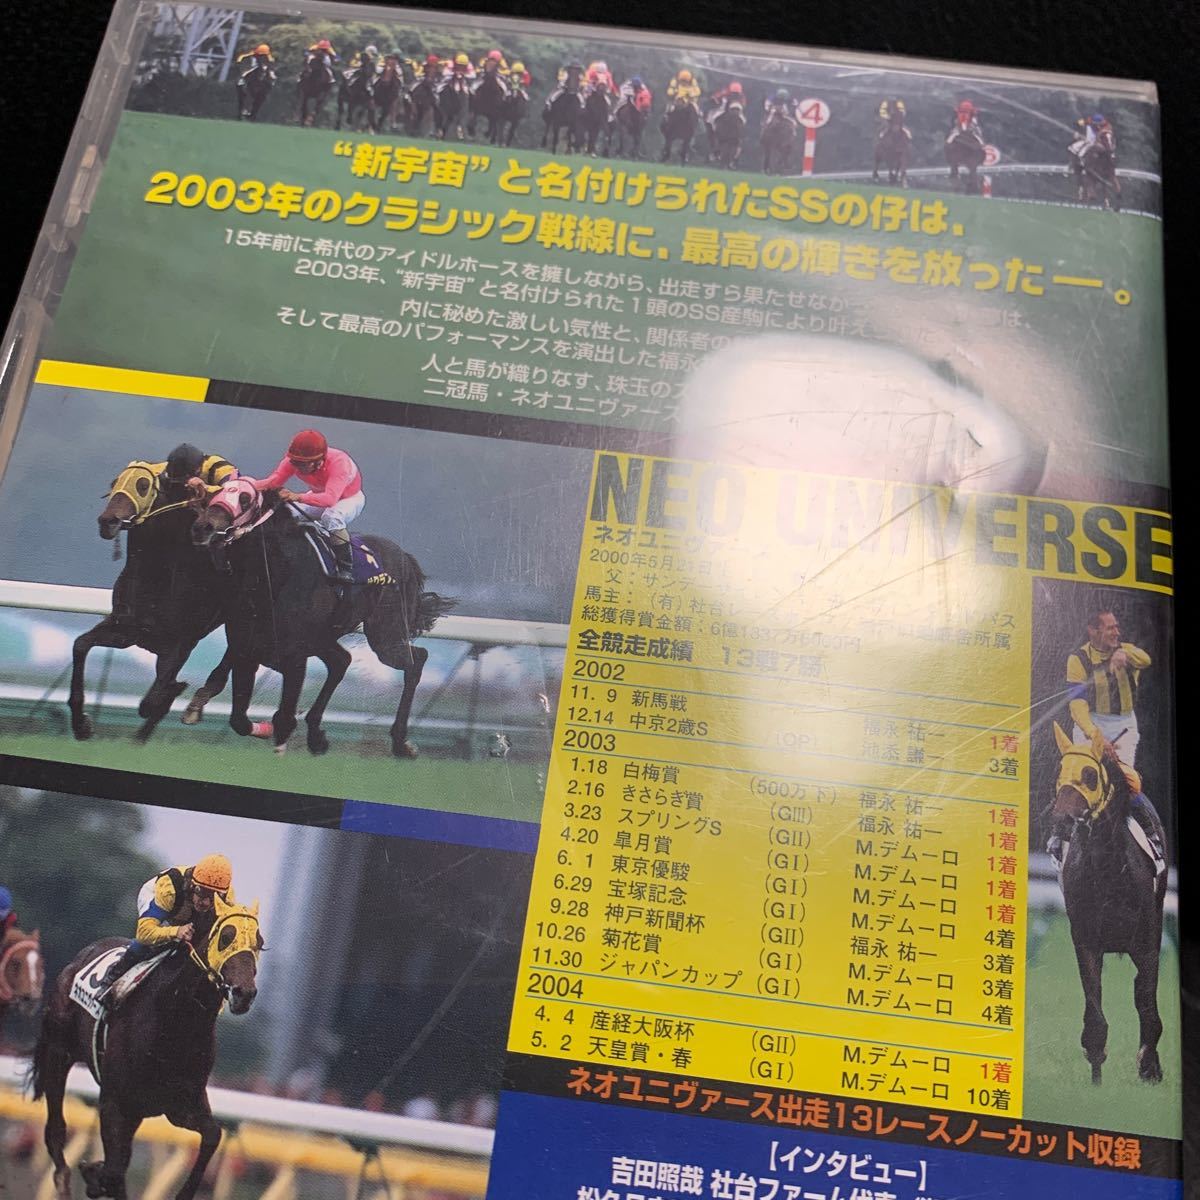 ネオユニヴァース 新たな星を目指して DVD 皐月賞 宝塚記念 日本ダービー サラブレッド 稀代の名馬 偉業の軌跡 全出走レースの画像5